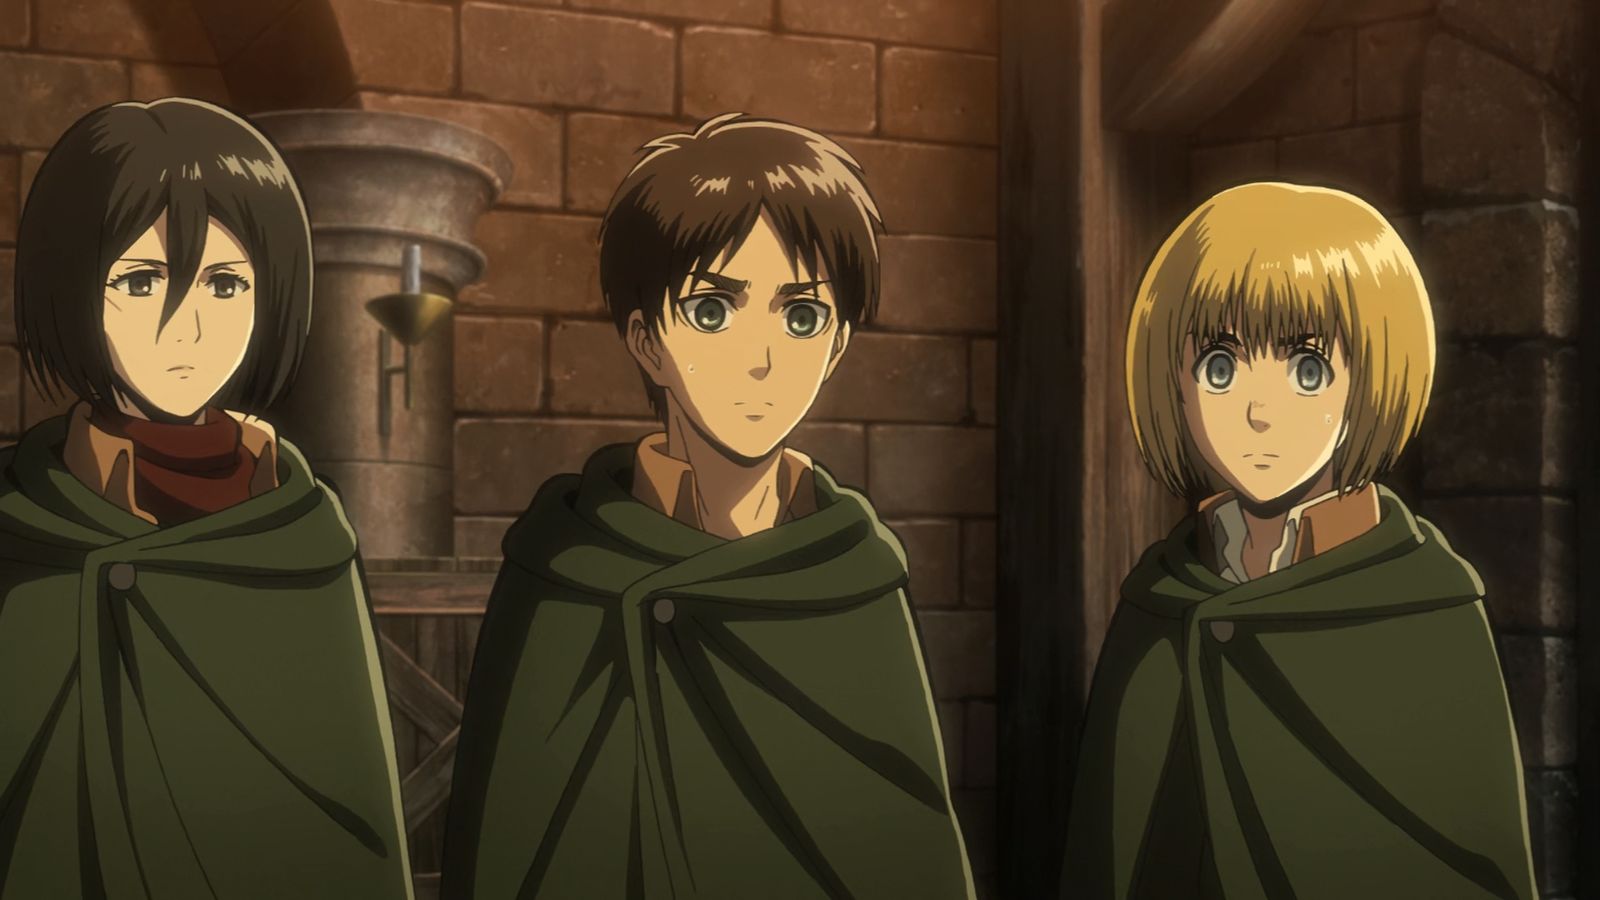 Anime trios Attack on Titan Trio Mikasa Eren and Armin